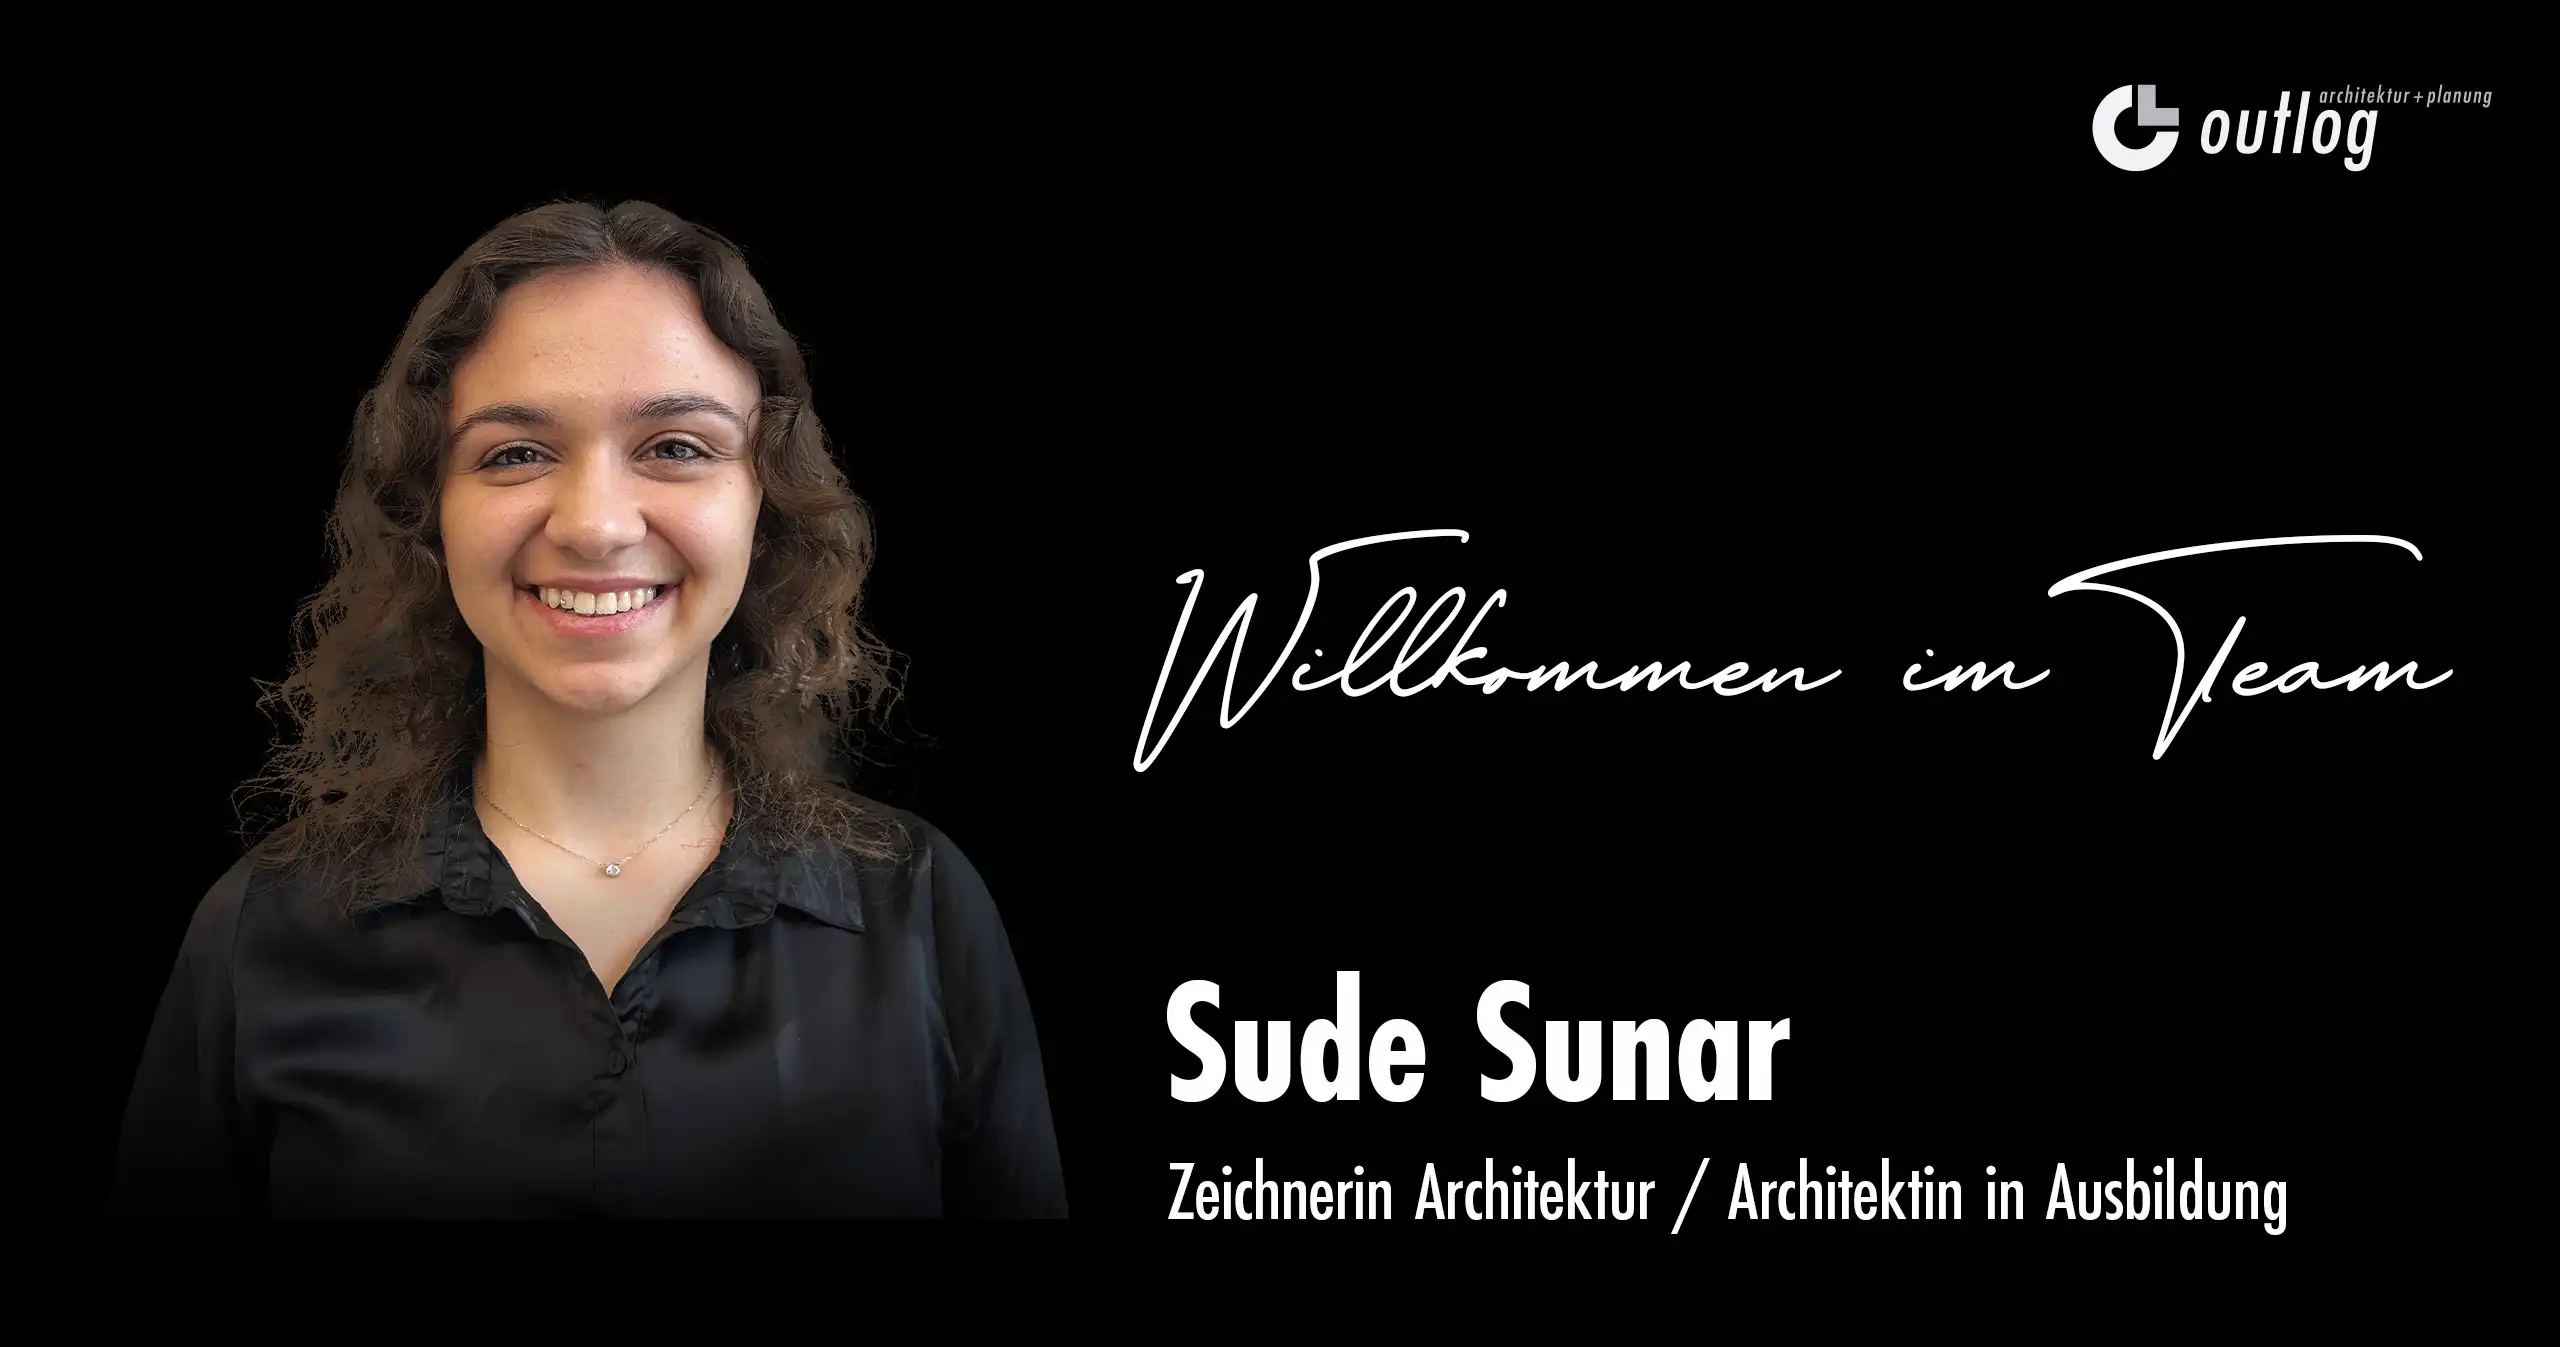 Sude Sunar, Zeichnerin Architektur bei der Outlog AG in Lenzburg, Aargau